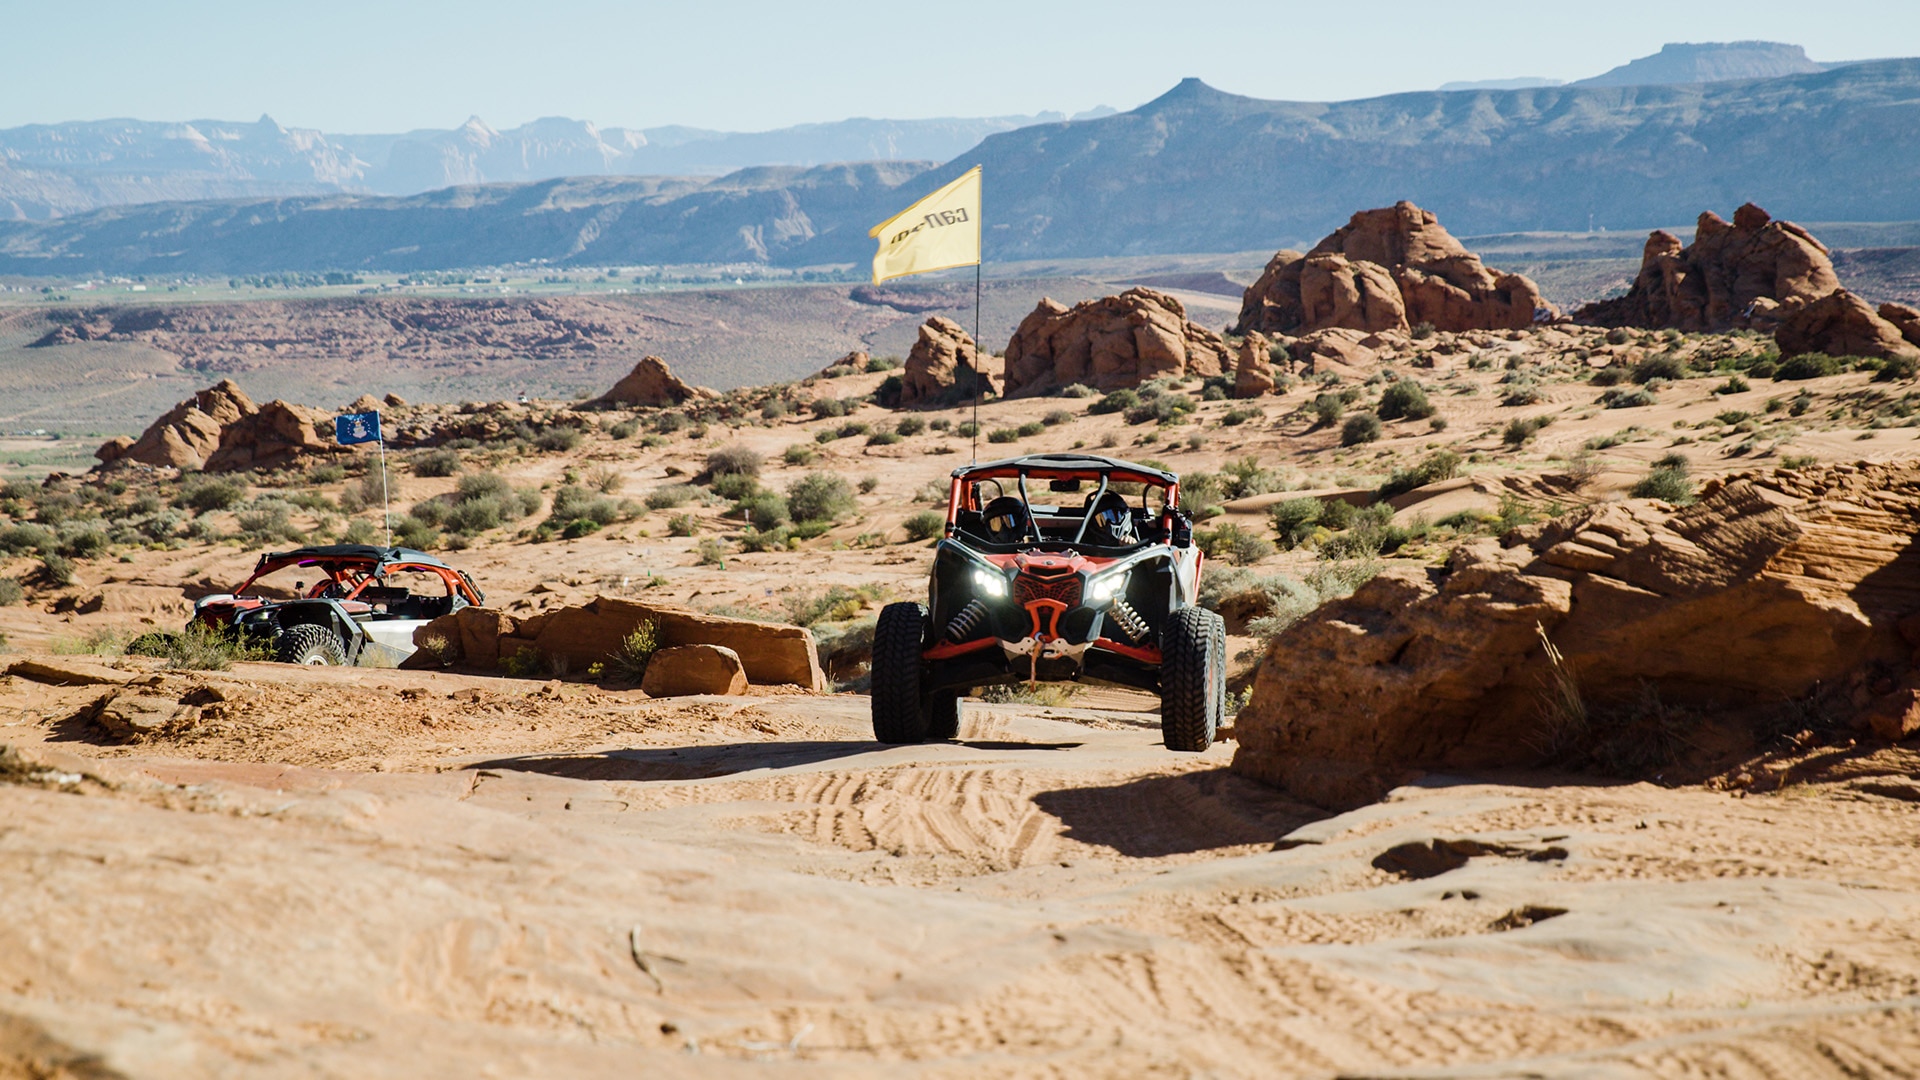 Vehículo Can-Am SxS circulando por el desierto